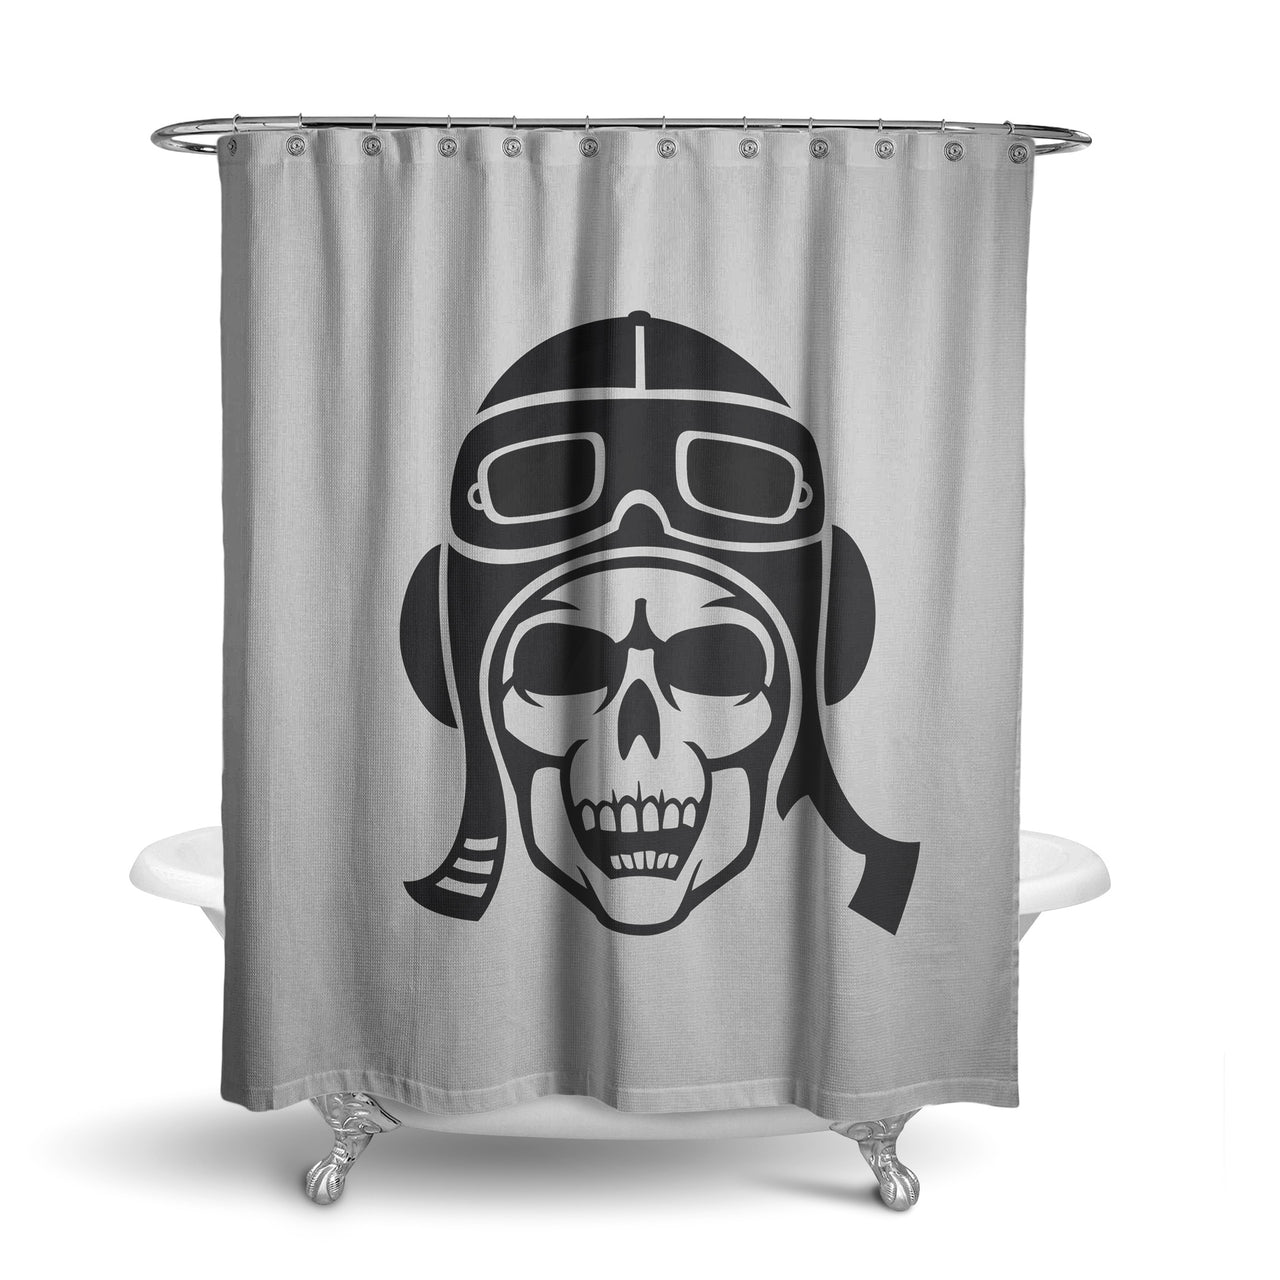 Skeleton Pilot Designed Shower Curtains